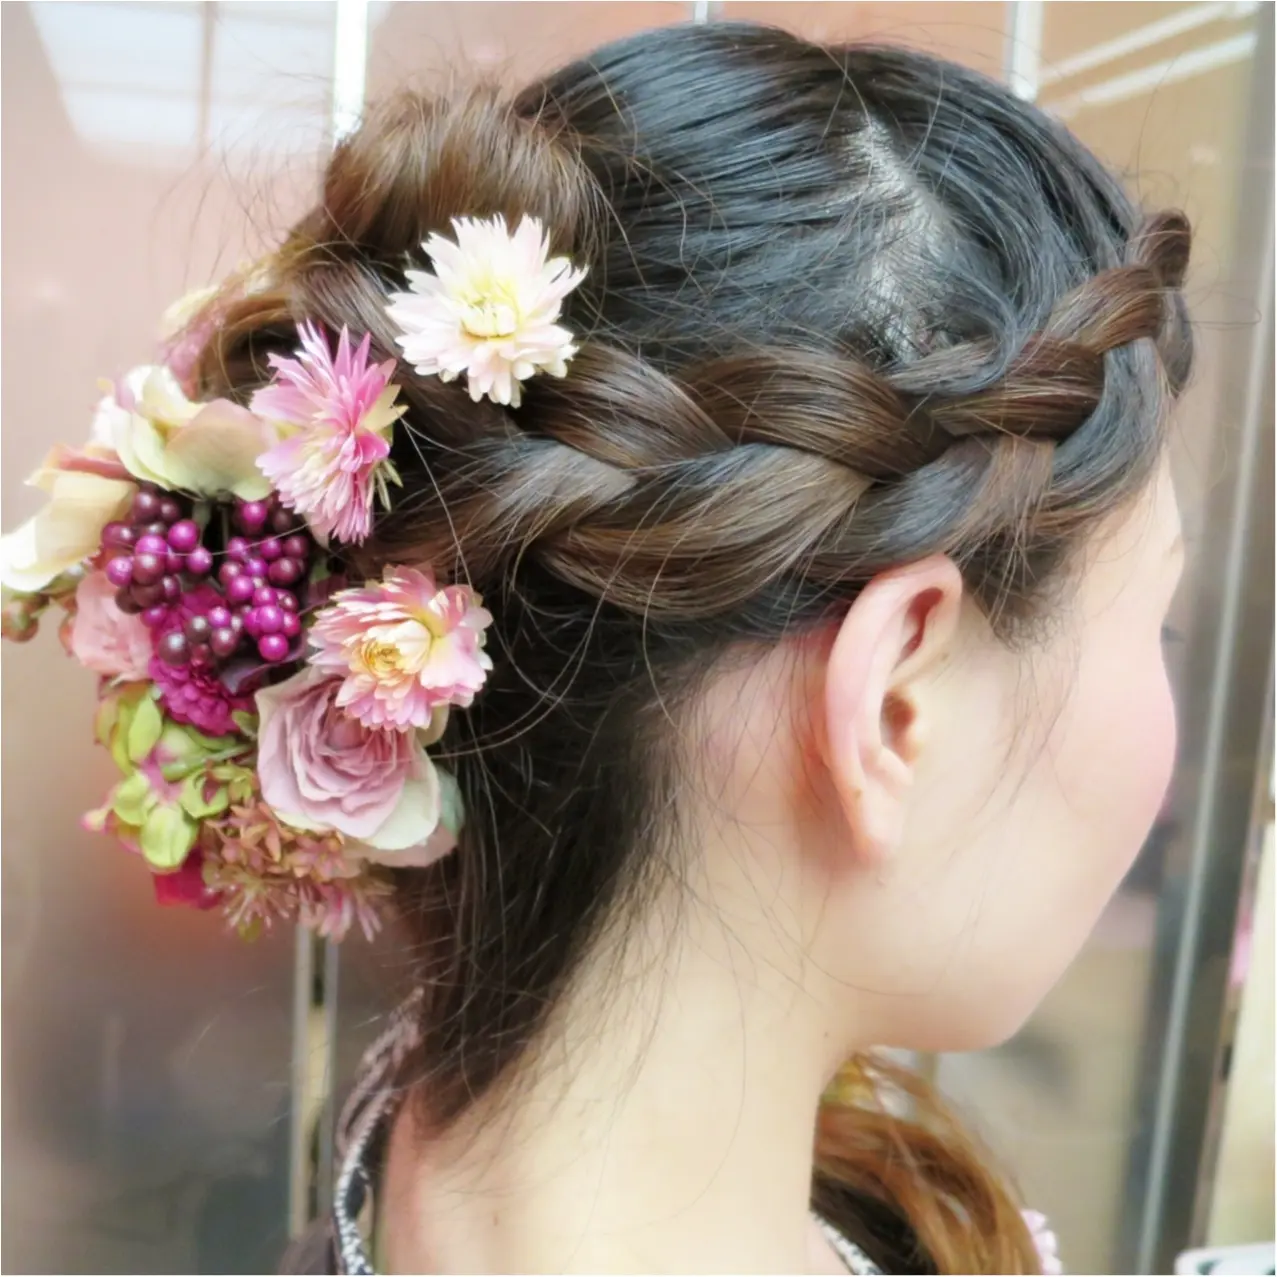 Wedding 私のヘアスタイル かわいいお花でラプンツェルみたいに 結婚式で後悔しないようにしておくべきこと Moreインフルエンサーズブログ Daily More